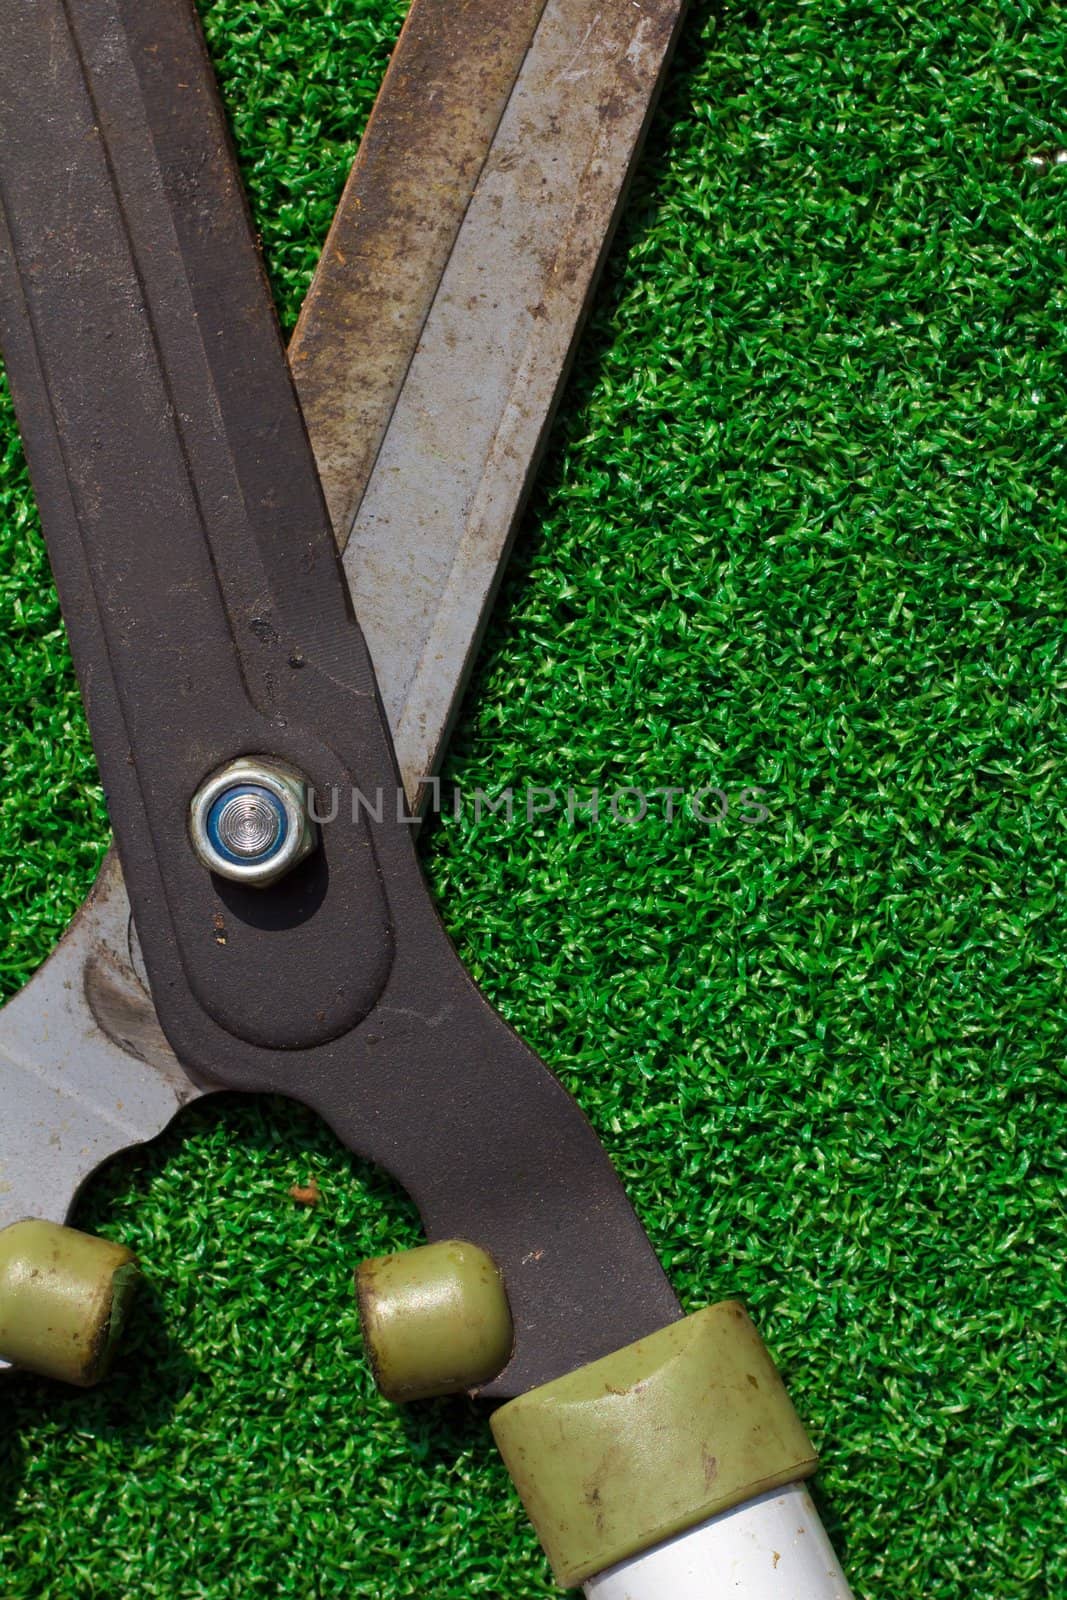 Scissors cut the grass